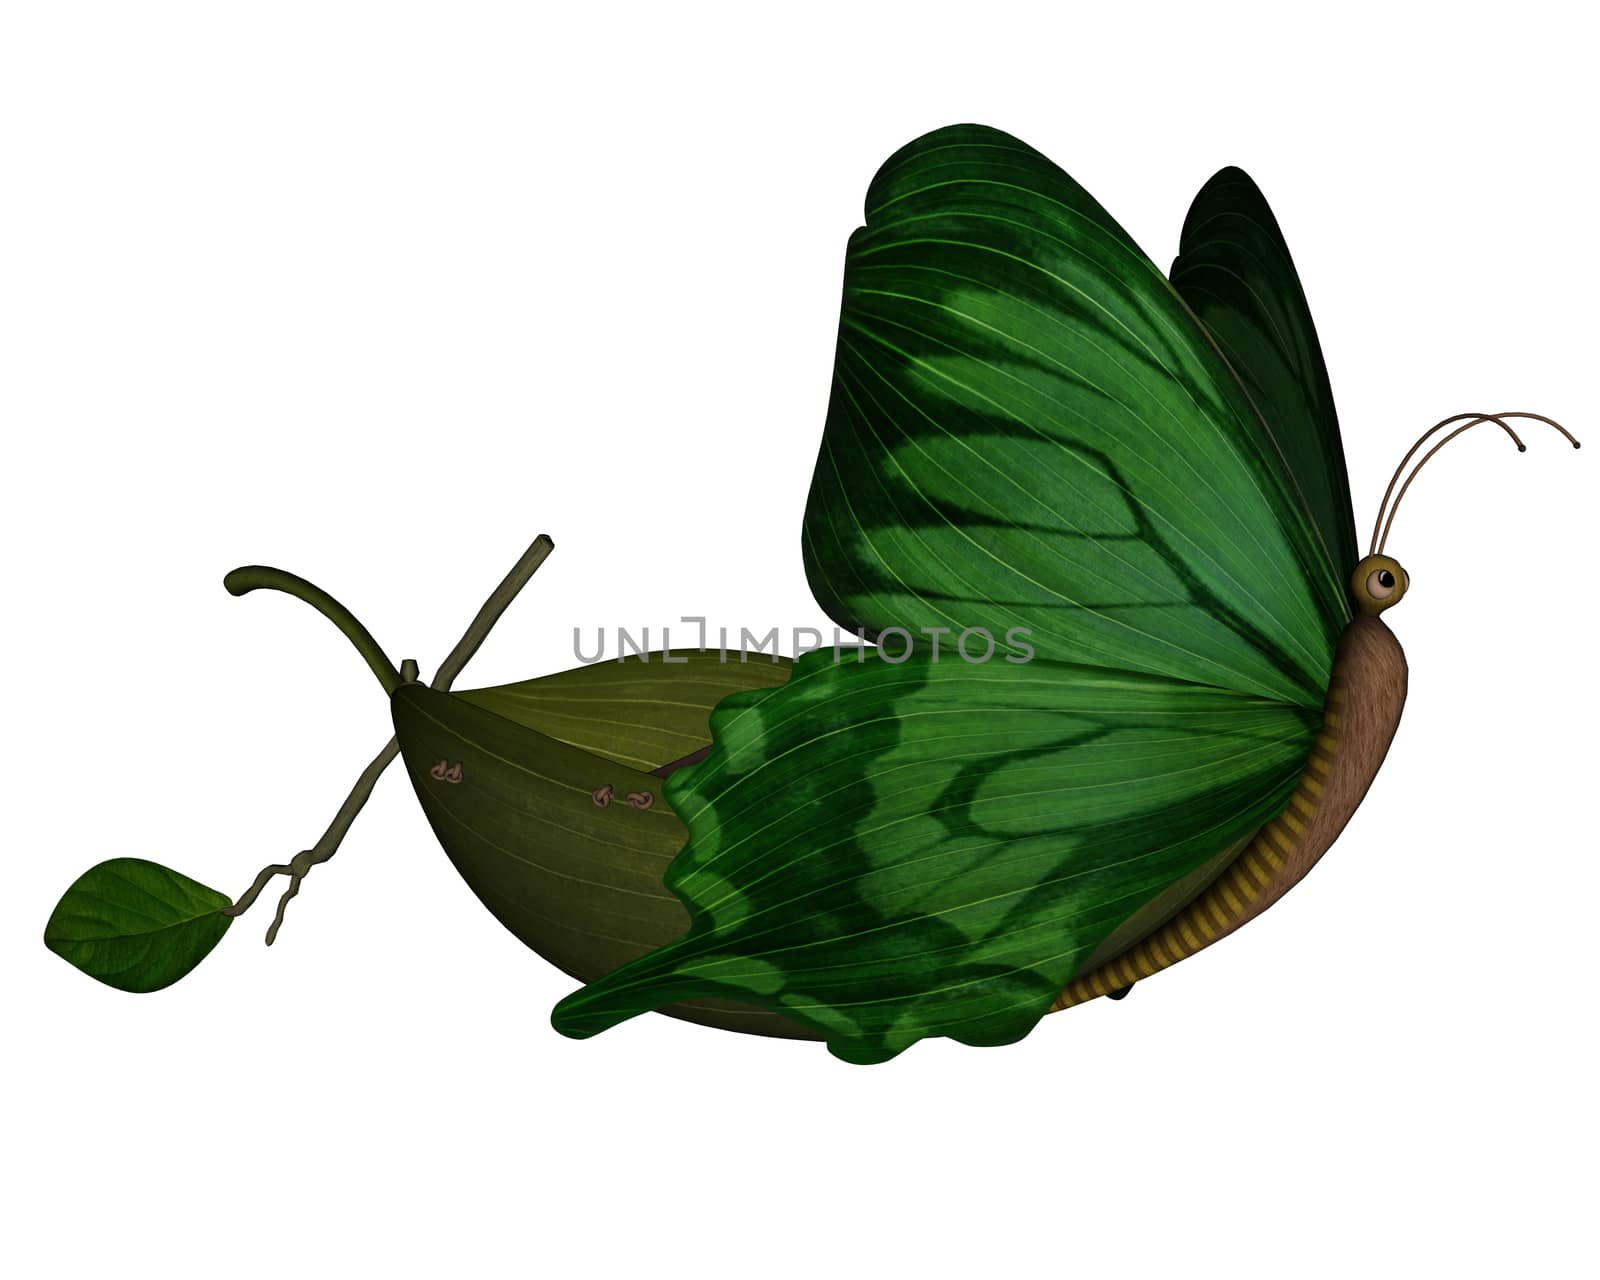 Butterfly boat - 3D render by Elenaphotos21